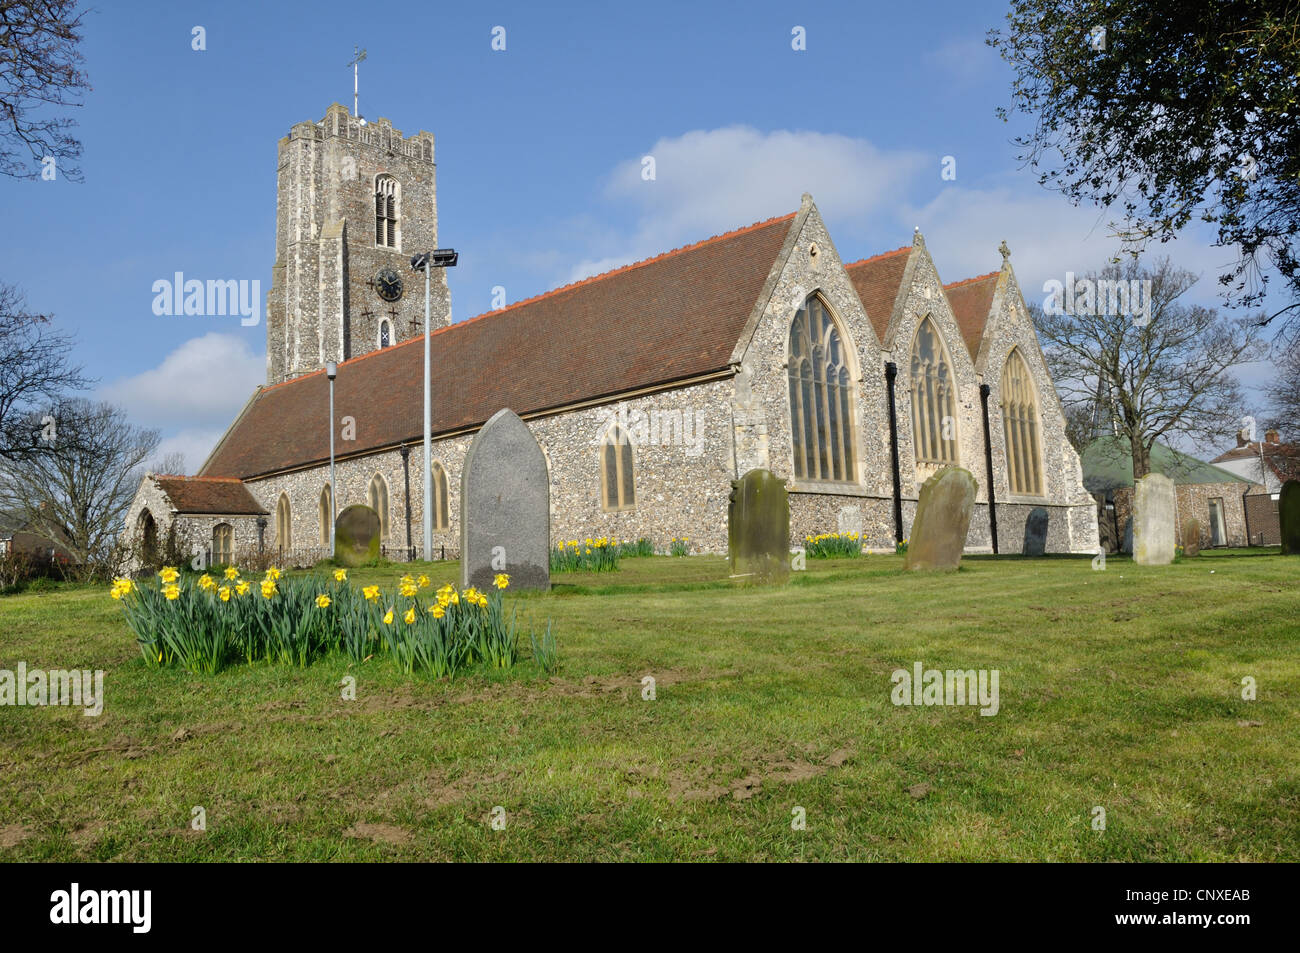 St. Andrew's Church, Gorleston-on-Sea, Norfolk, UK. Stock Photo